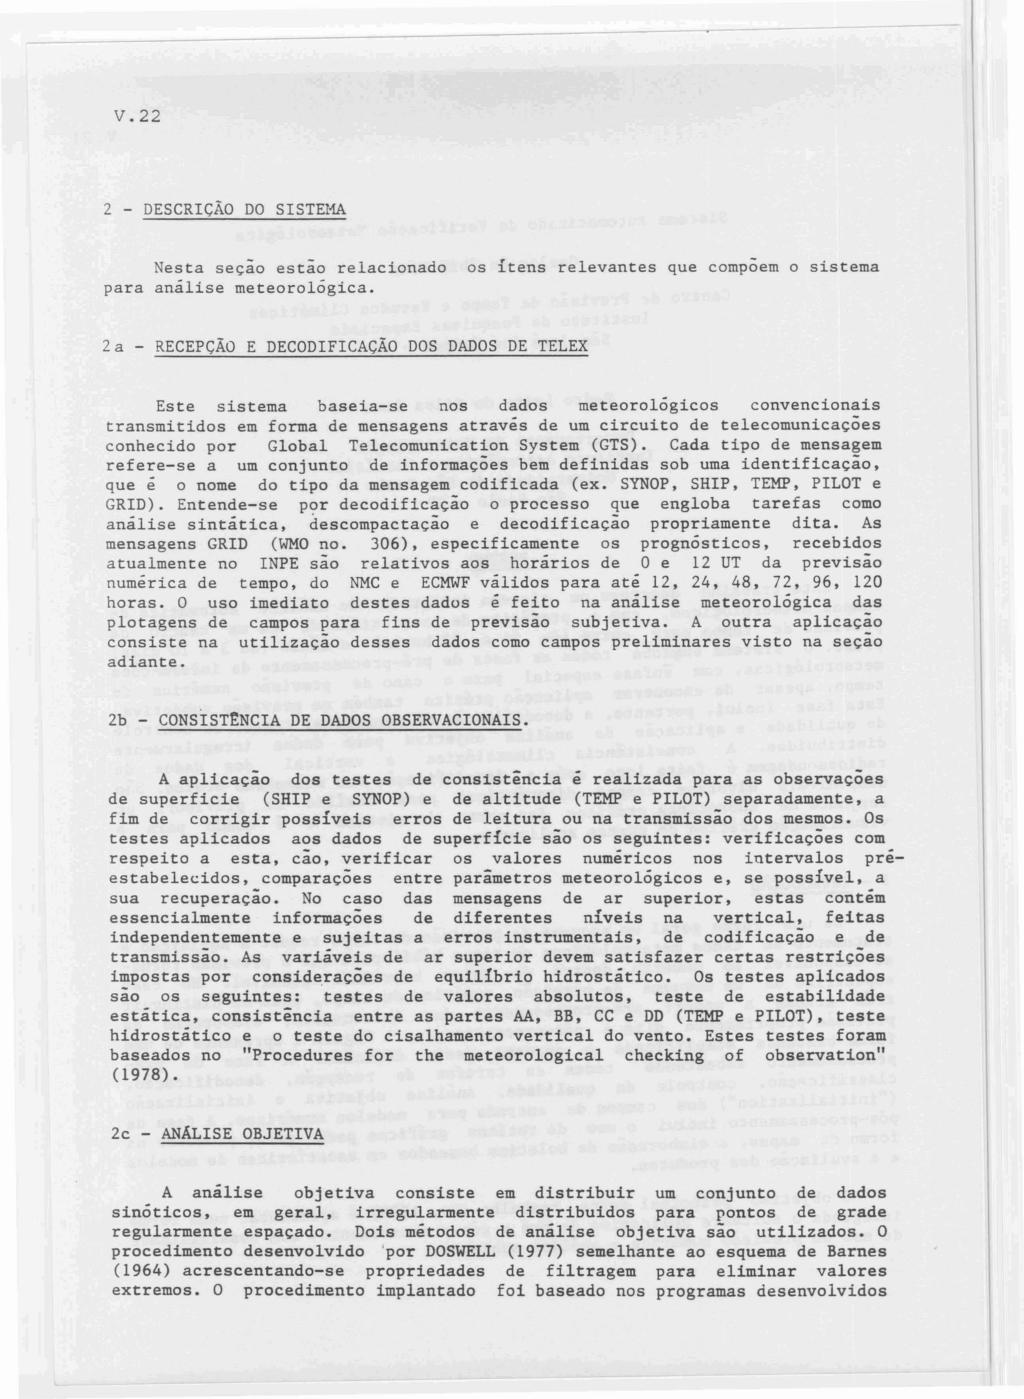 V.22 2 - DESCRIÇÃO DO SISTEi1A Nesta seção estão relacionado para análise meteorológica.